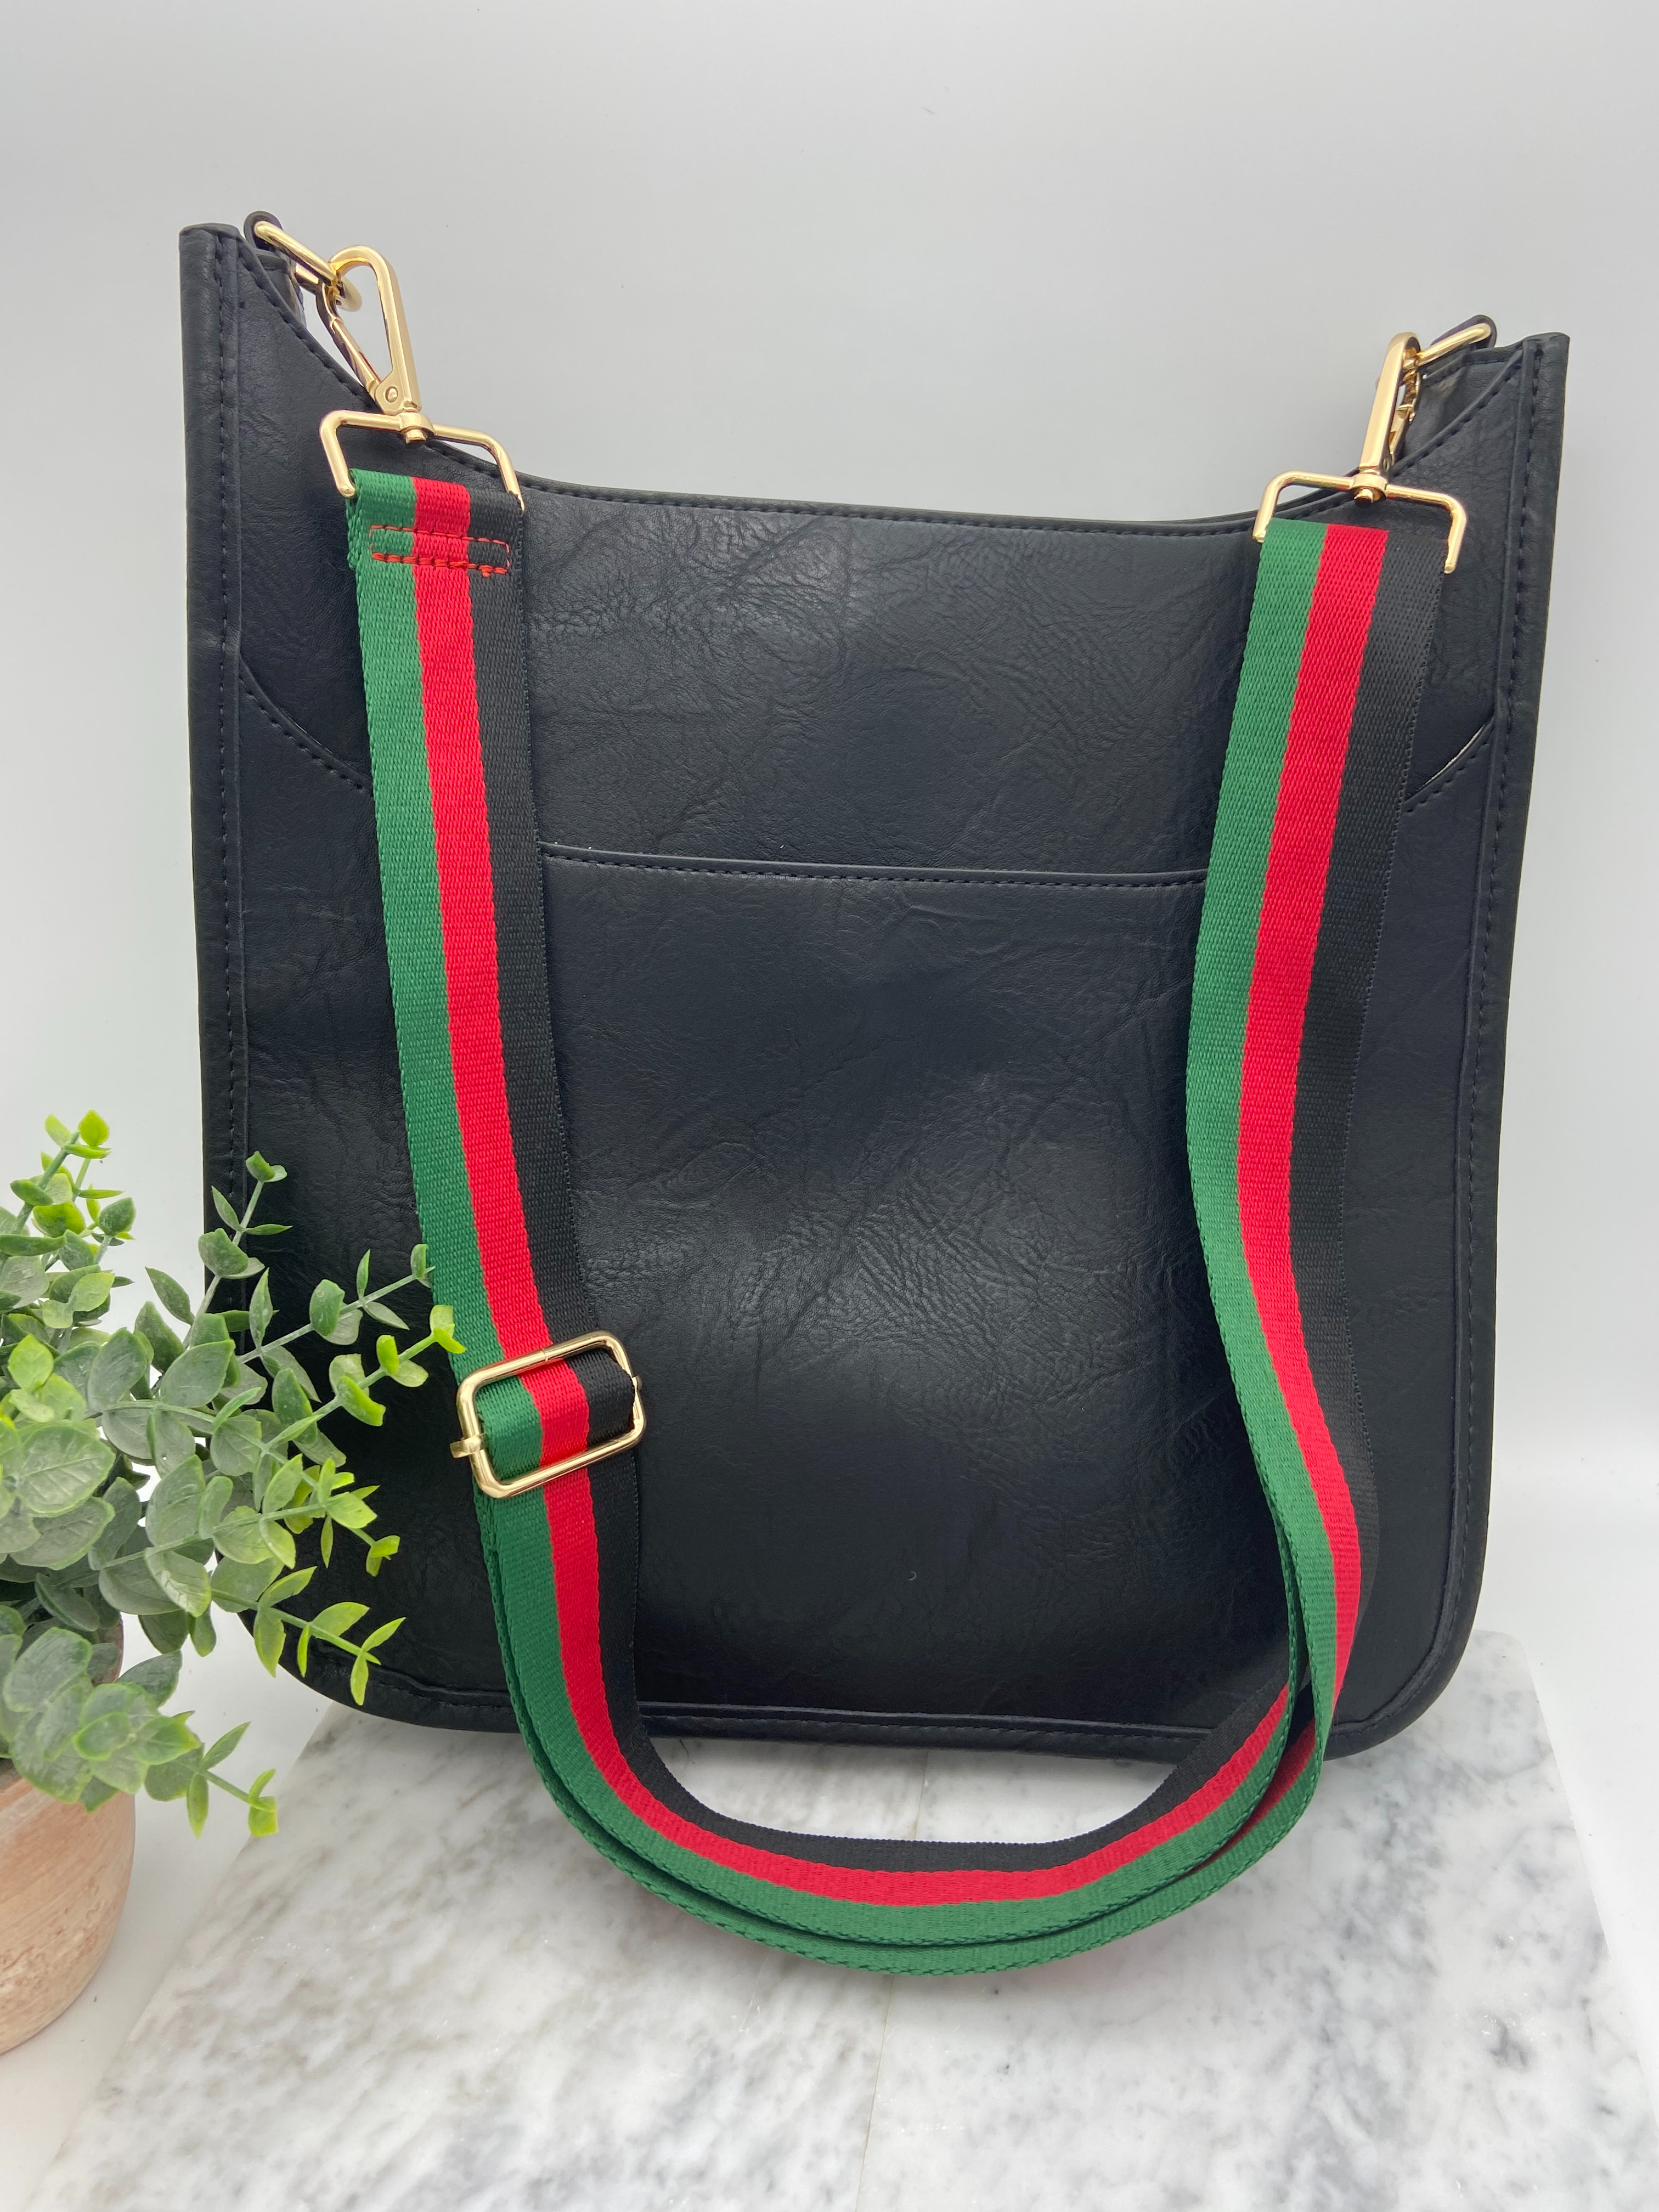 Black leather Gucci bag  Black leather gucci bag, Bags, Gucci bag